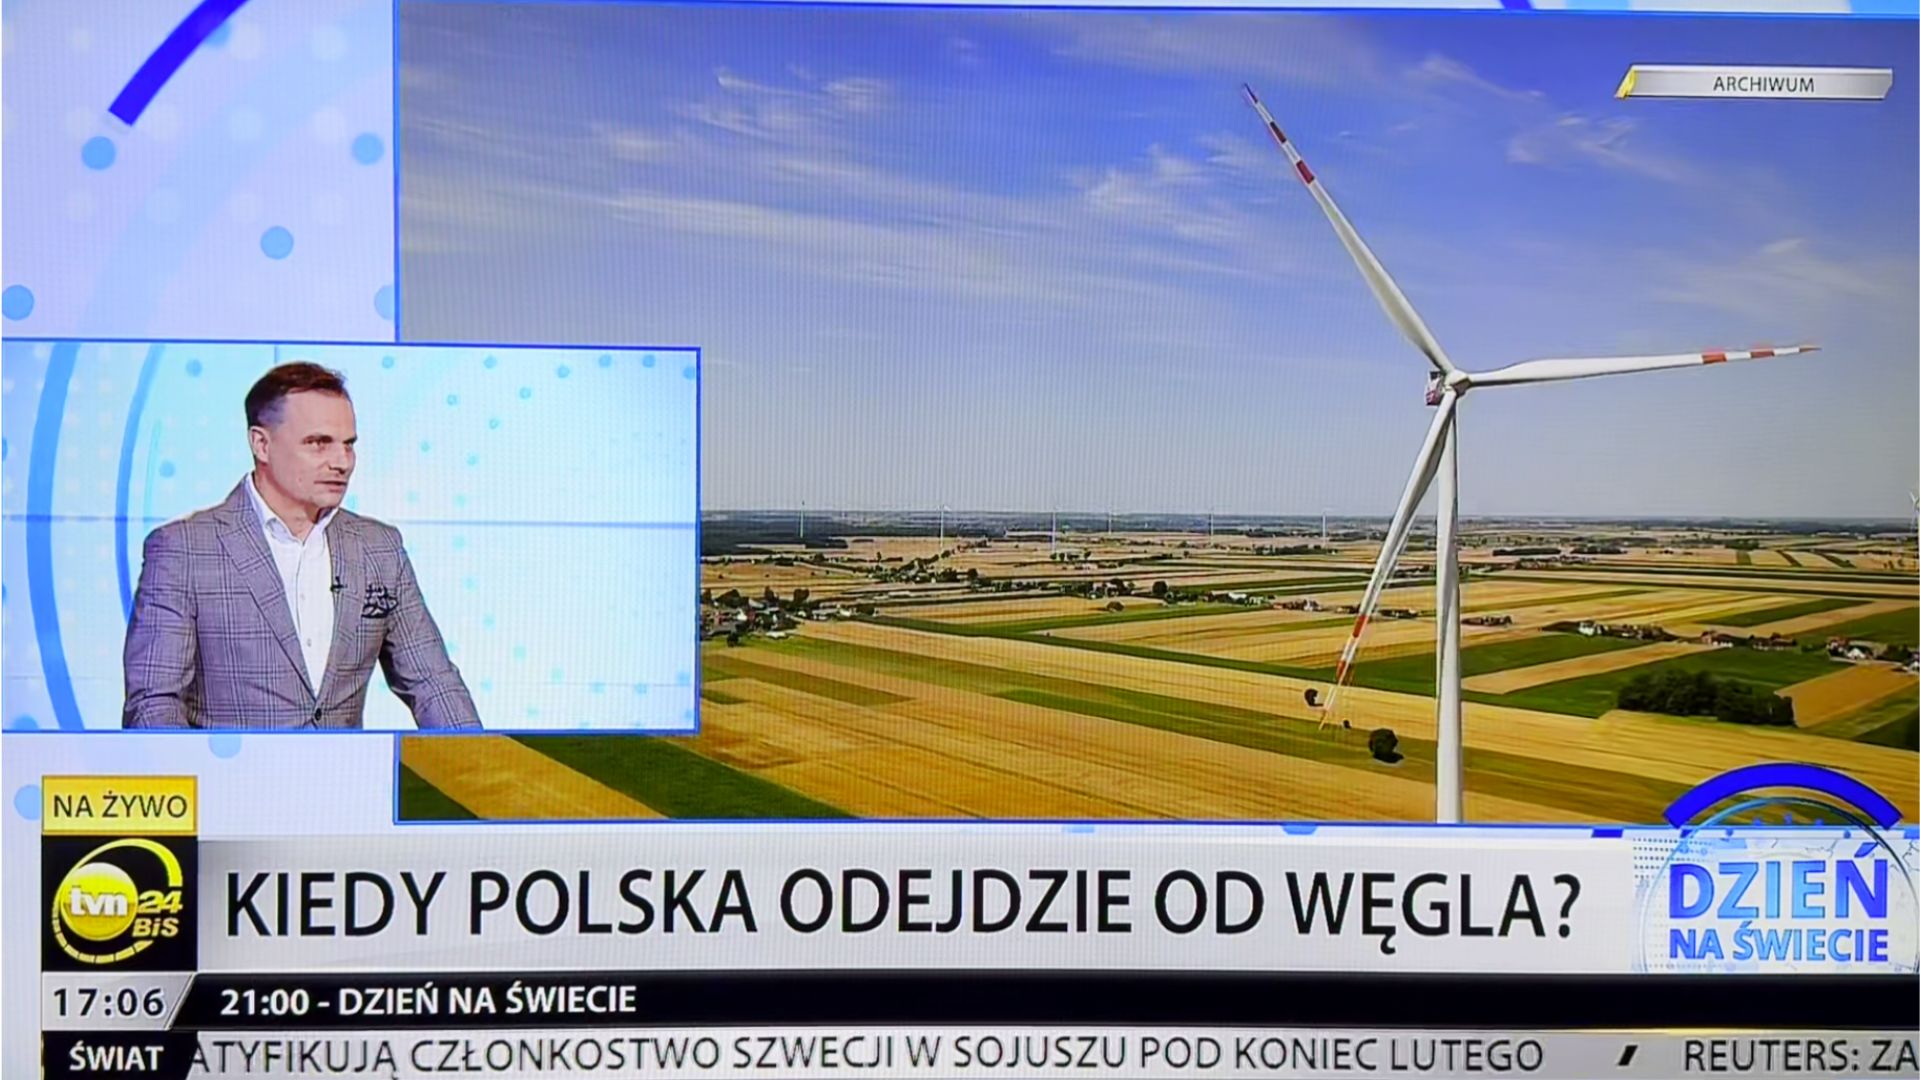 Przegląd mediów PF - TVN24 Biznes i Świat wywiad Tomasz Wiśniewski